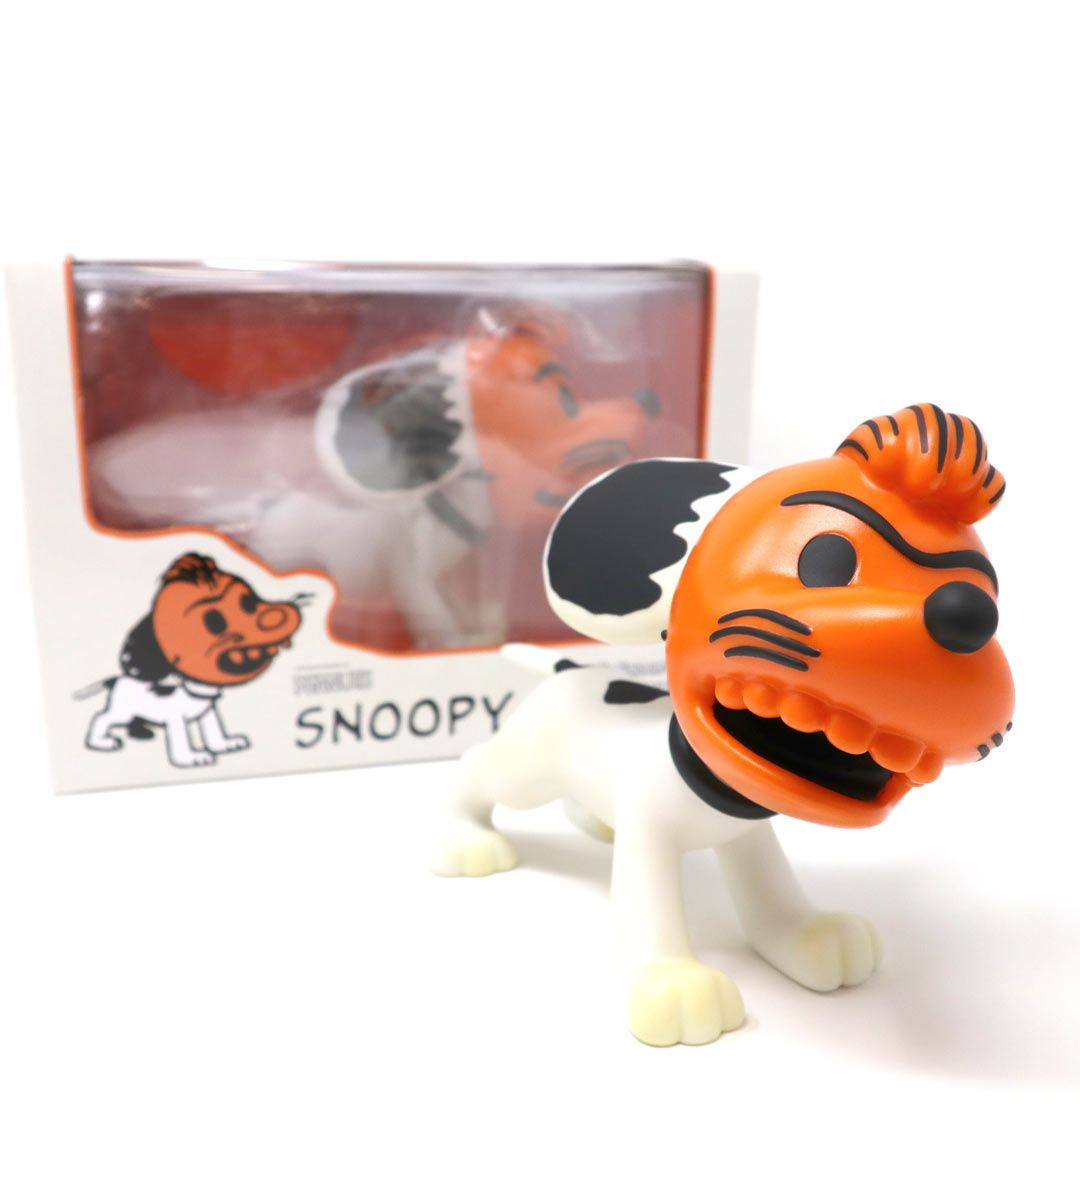 Figurine VCD 50's Peanuts - Snoopy avec un masque orange